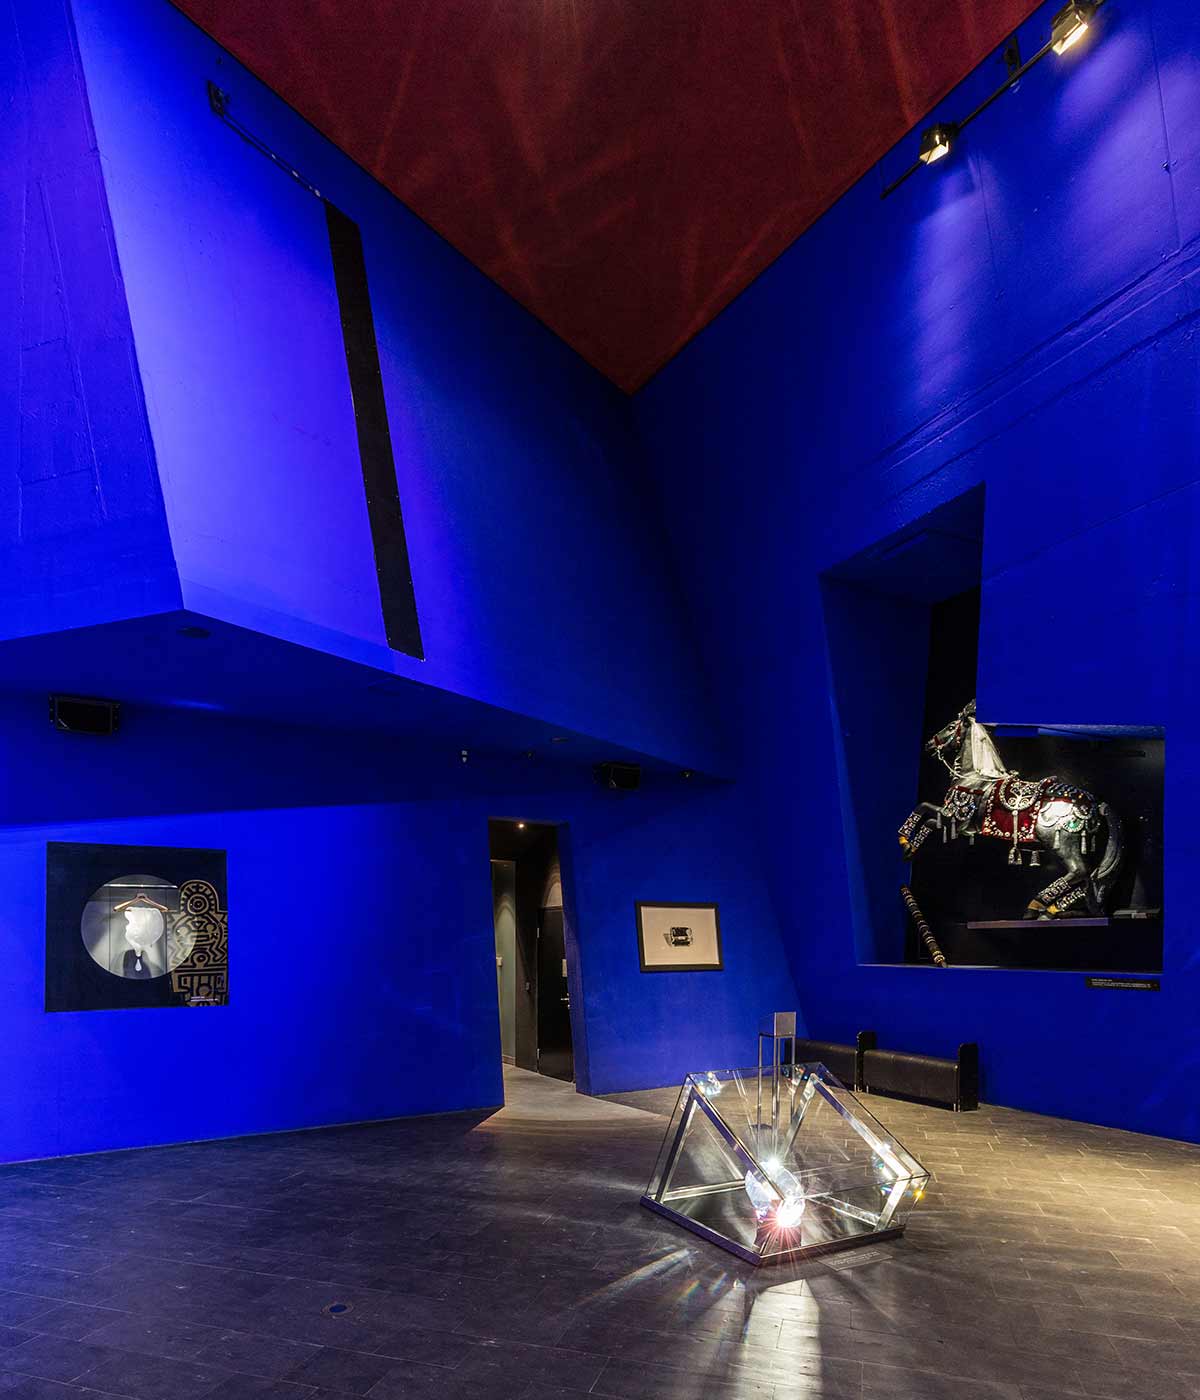 Blick in die Blaue Halle der Swarovski Kristallwelten